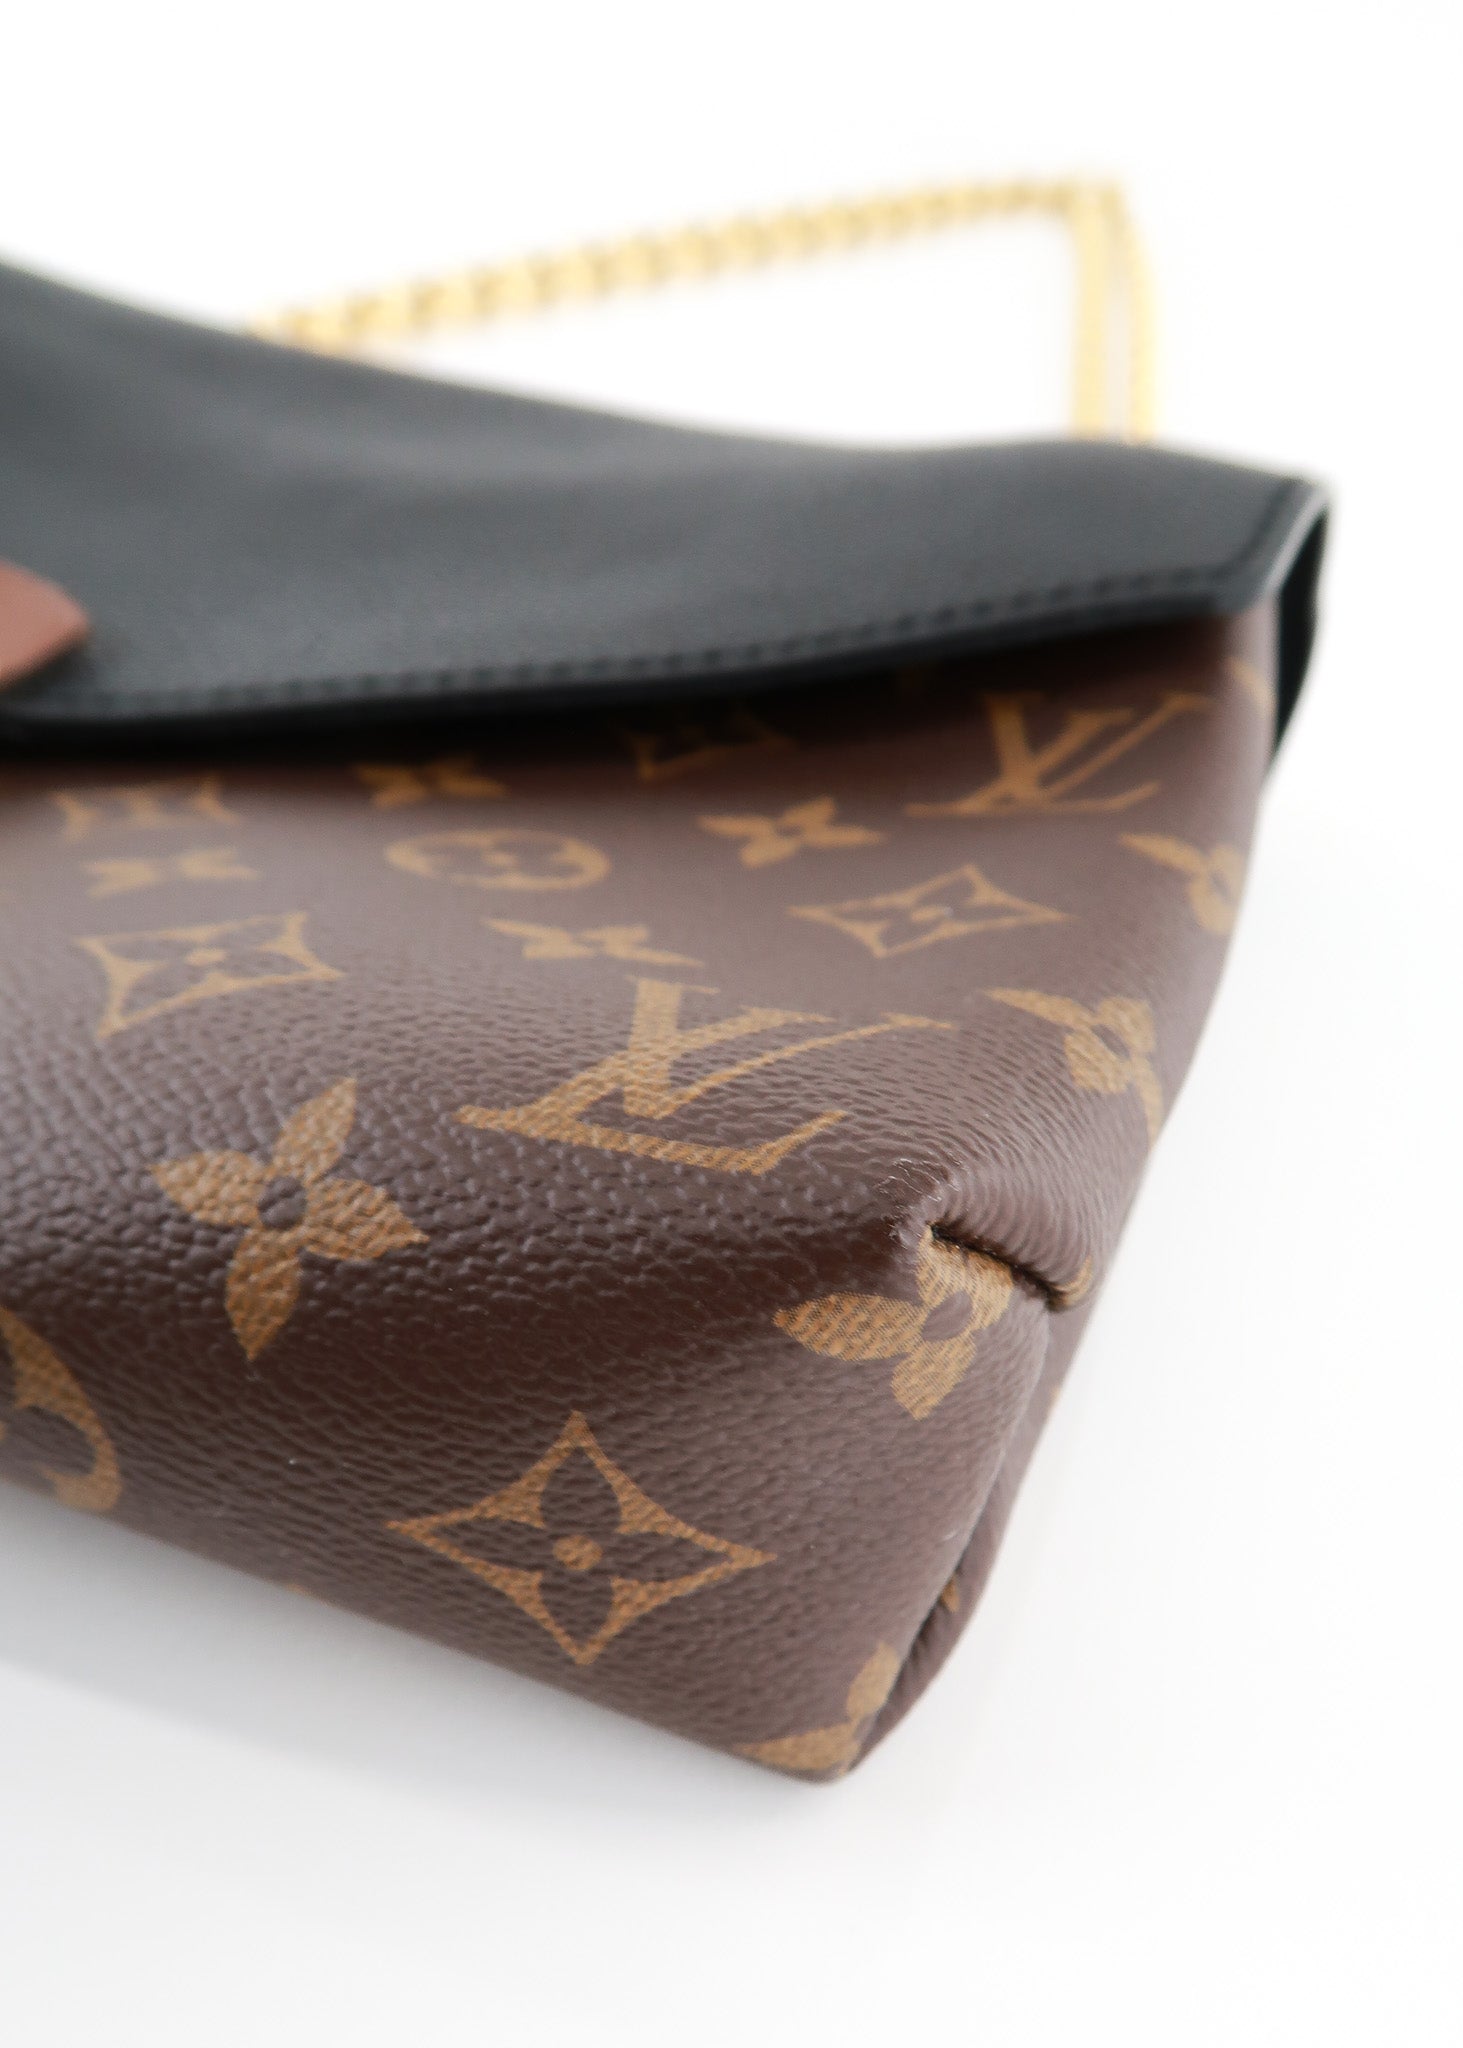 Louis Vuitton Pallas Chain Shoulder Bag Monogram Canvas and